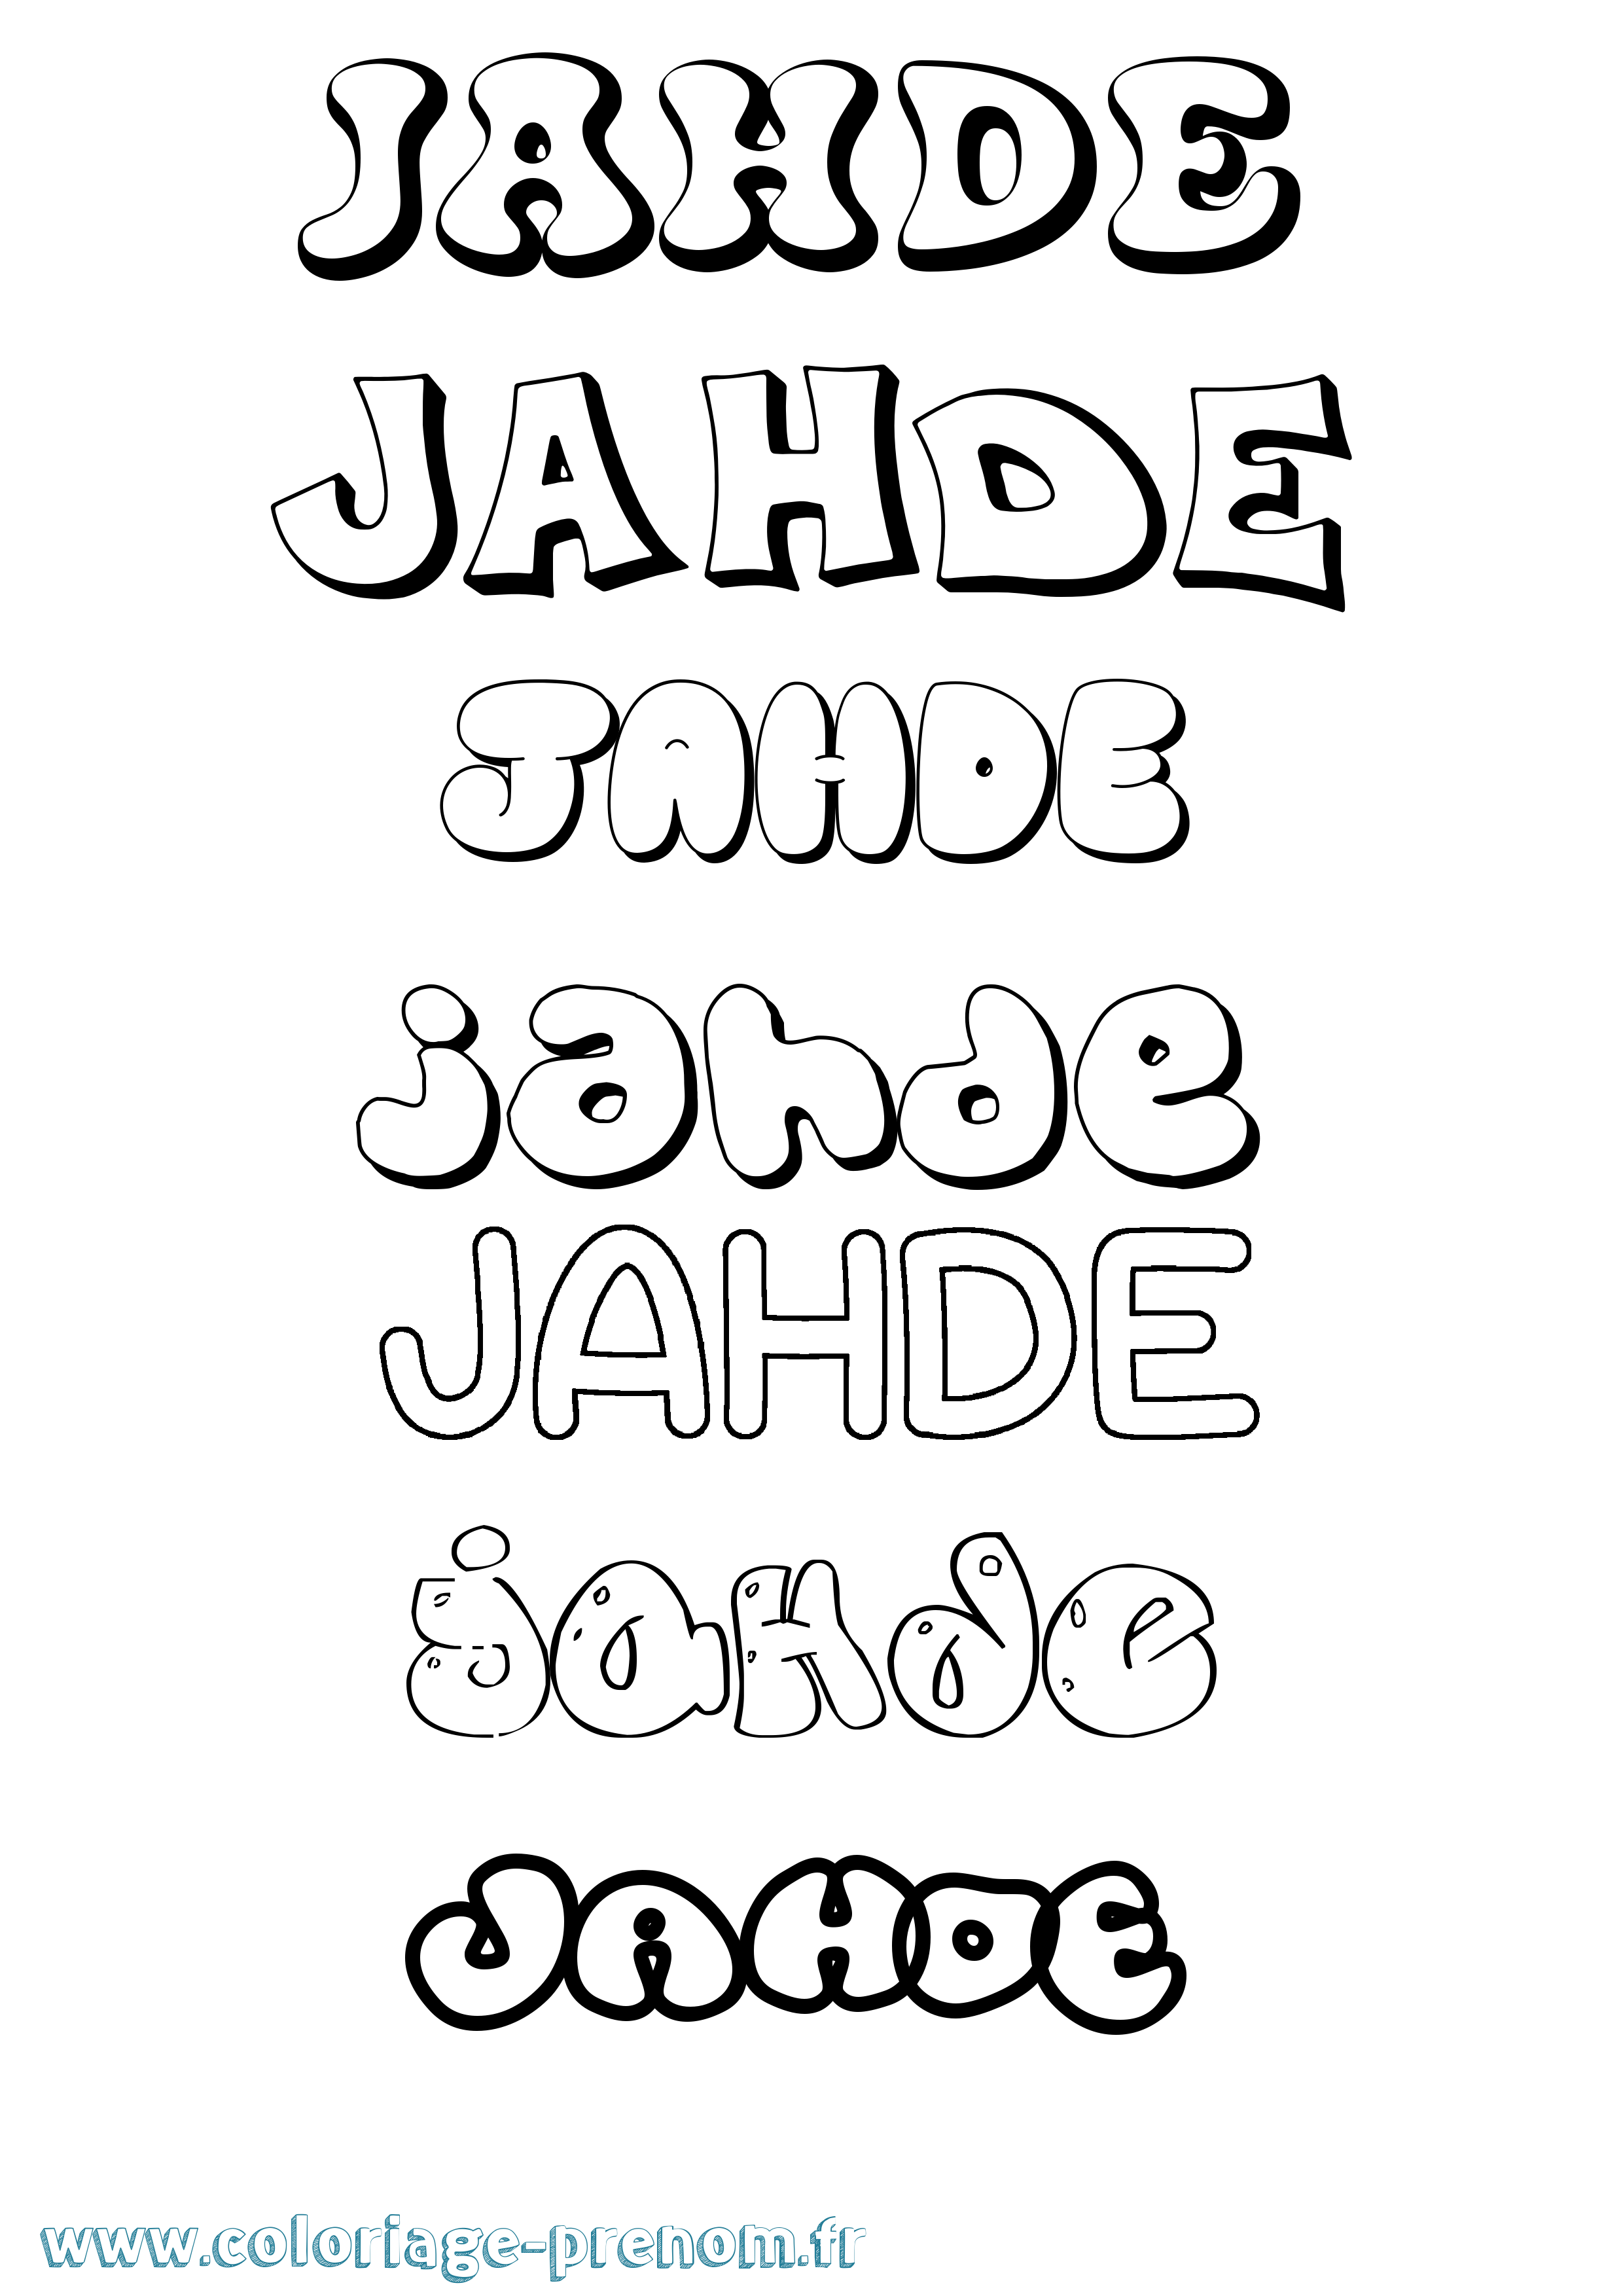 Coloriage prénom Jahde Bubble